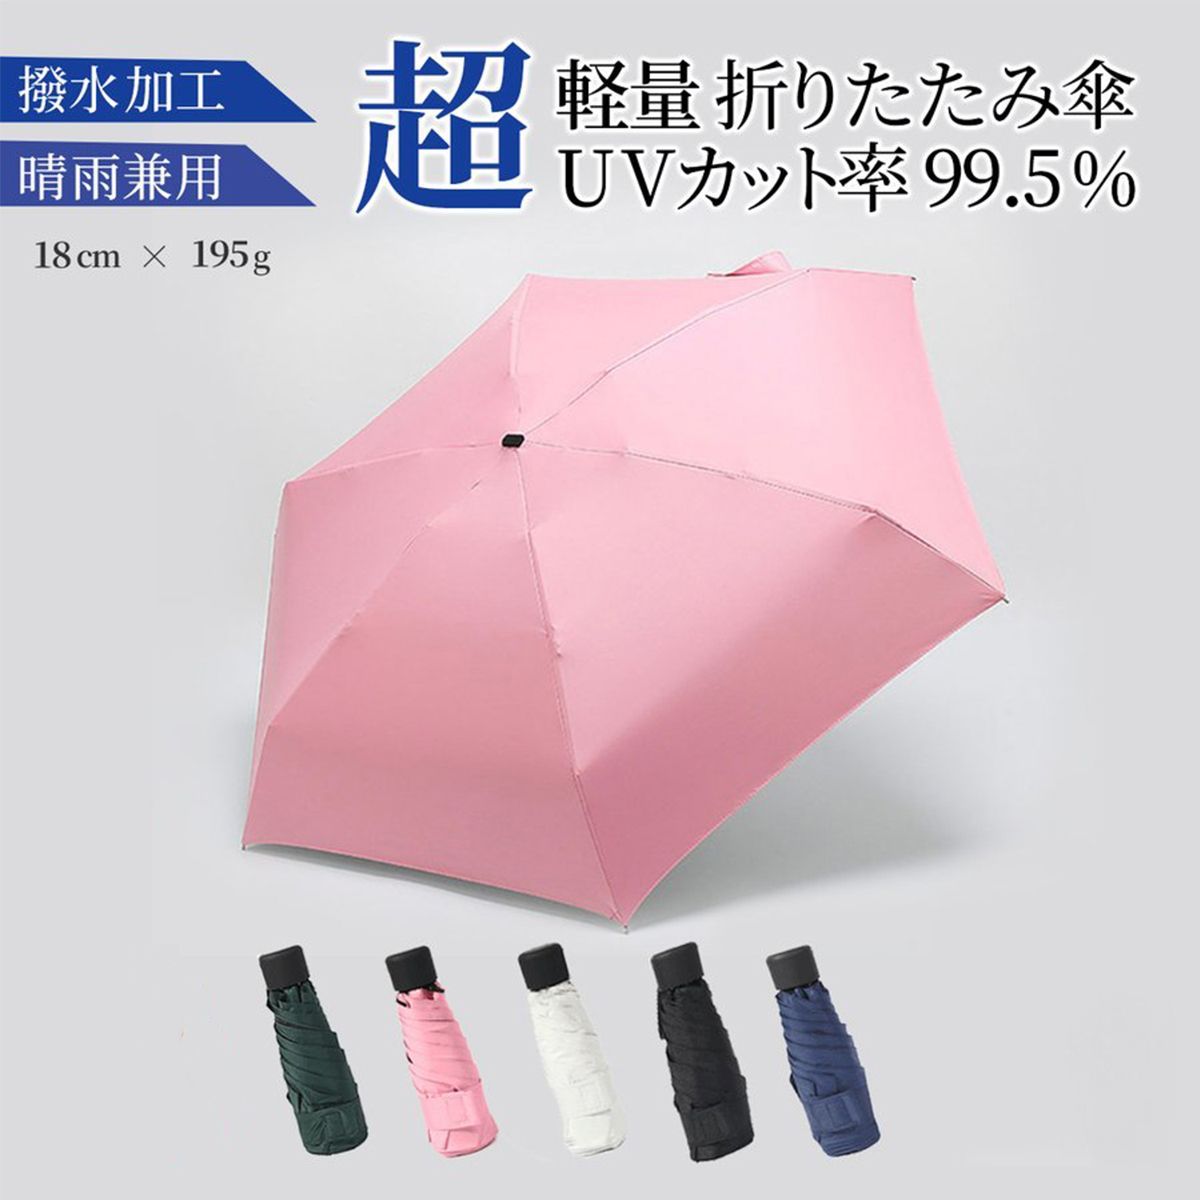 低廉 折りたたみ傘 日傘 雨晴兼用 UVカット 超軽量 小型 ピンク 収納ケース付き